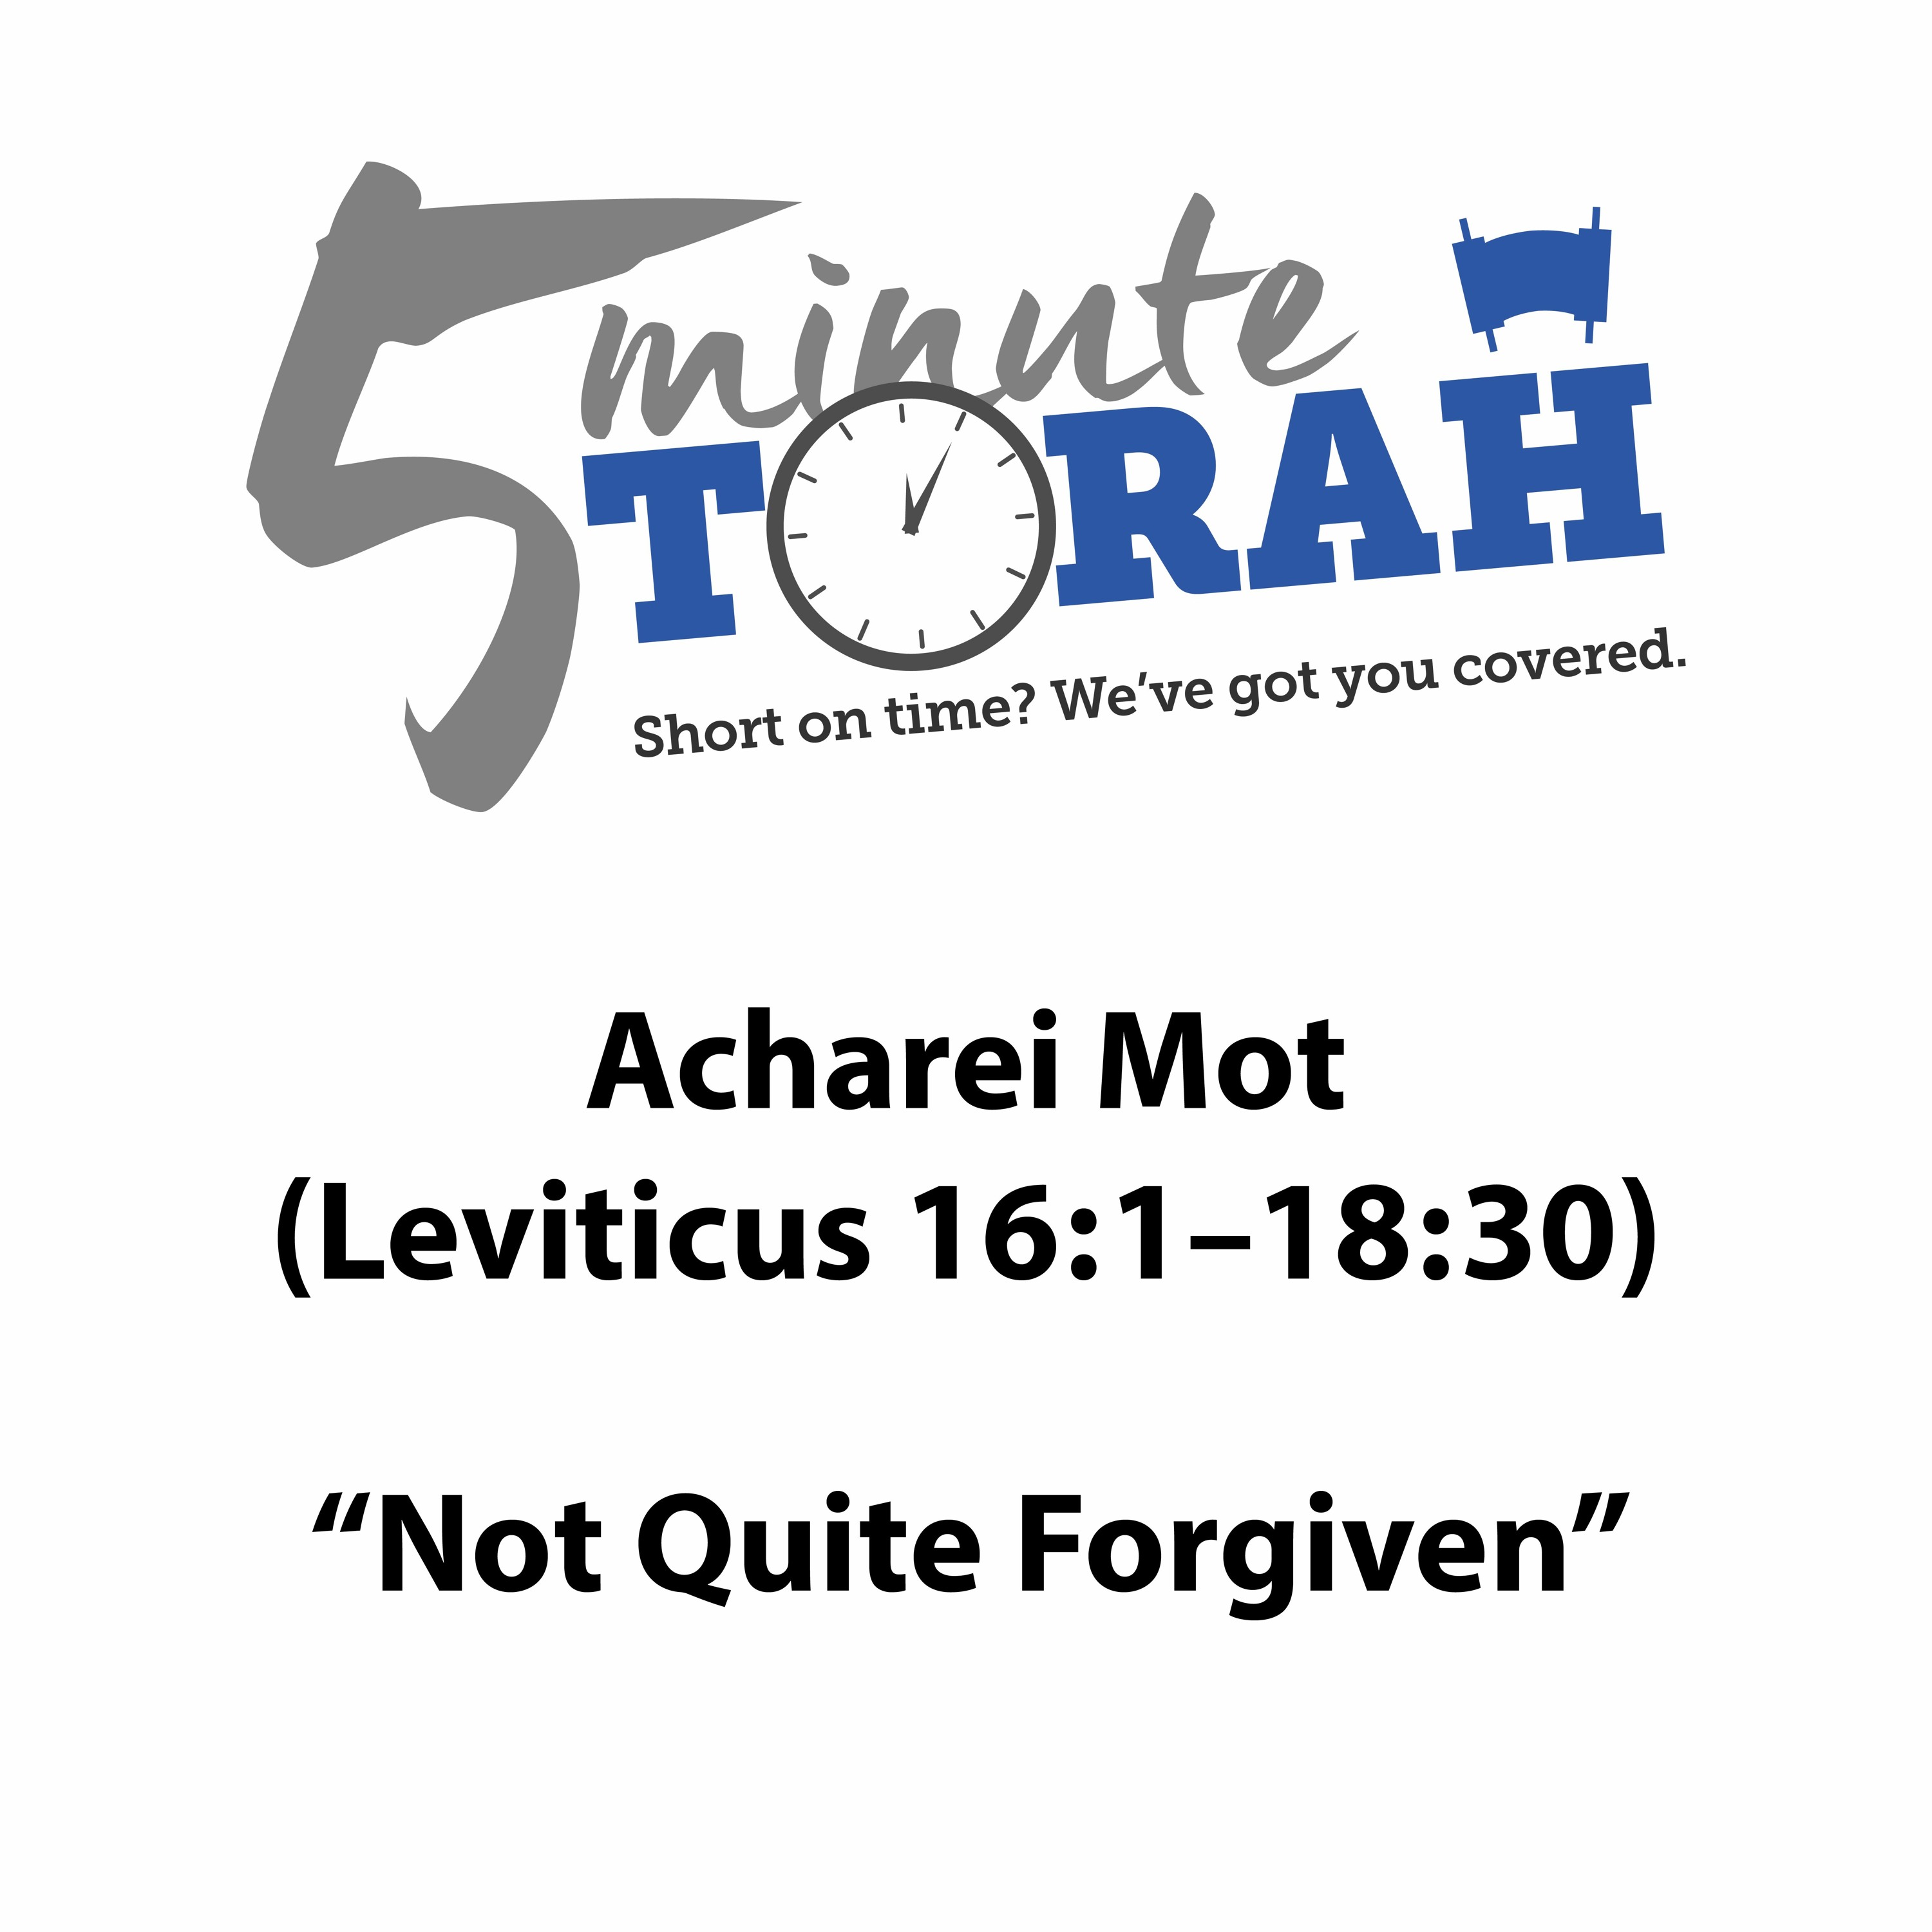 Acharei Mot - ”Not Quite Forgiven”